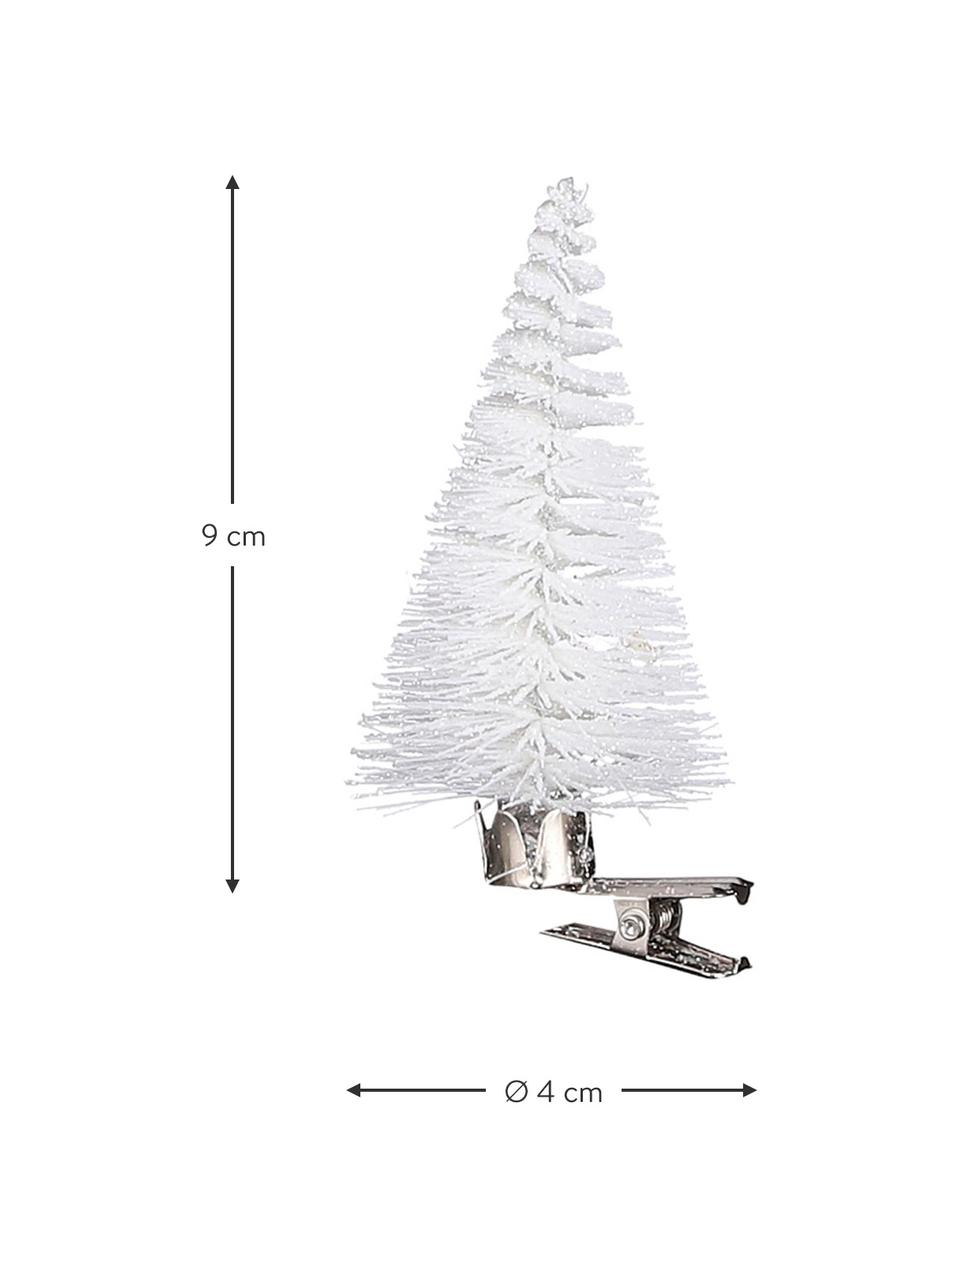 Ozdoby na stromeček s klipem Whitoo, 6 ks, Umělá hmota, kov, Bílá, Ø 4 cm, V 9 cm